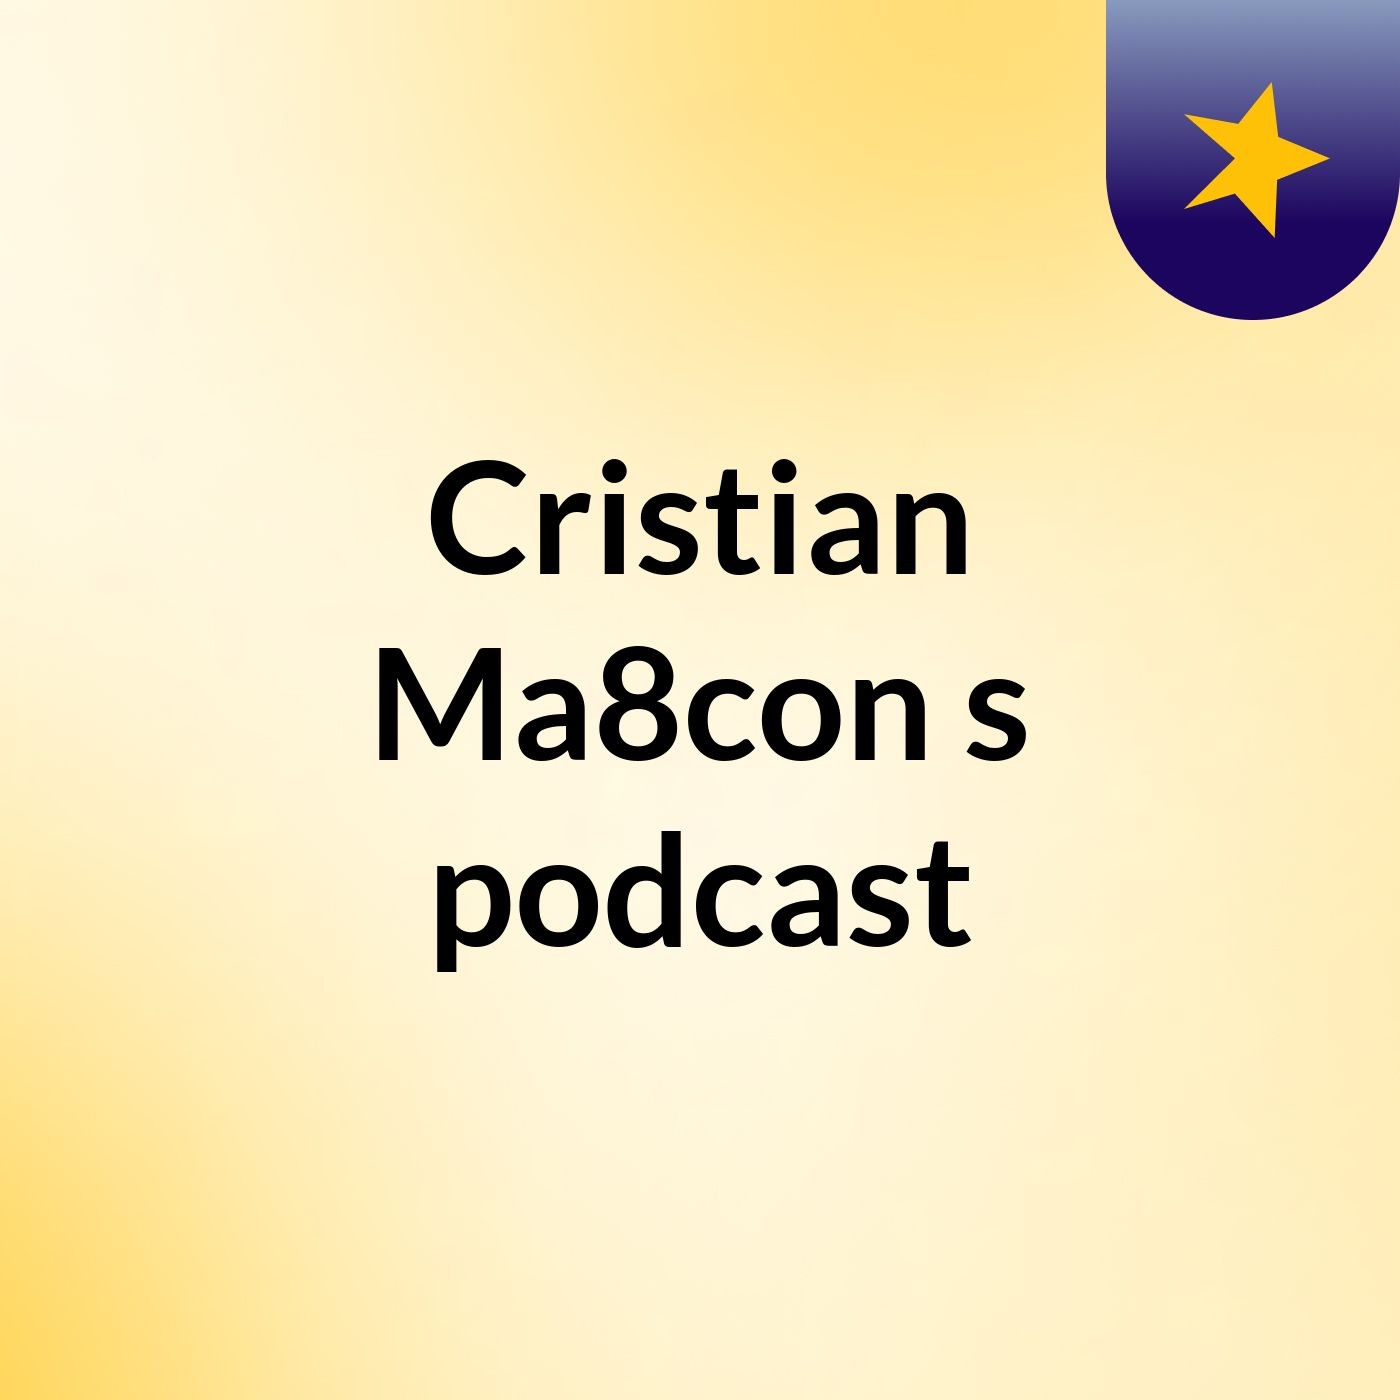 Cristian Ma8con's podcast